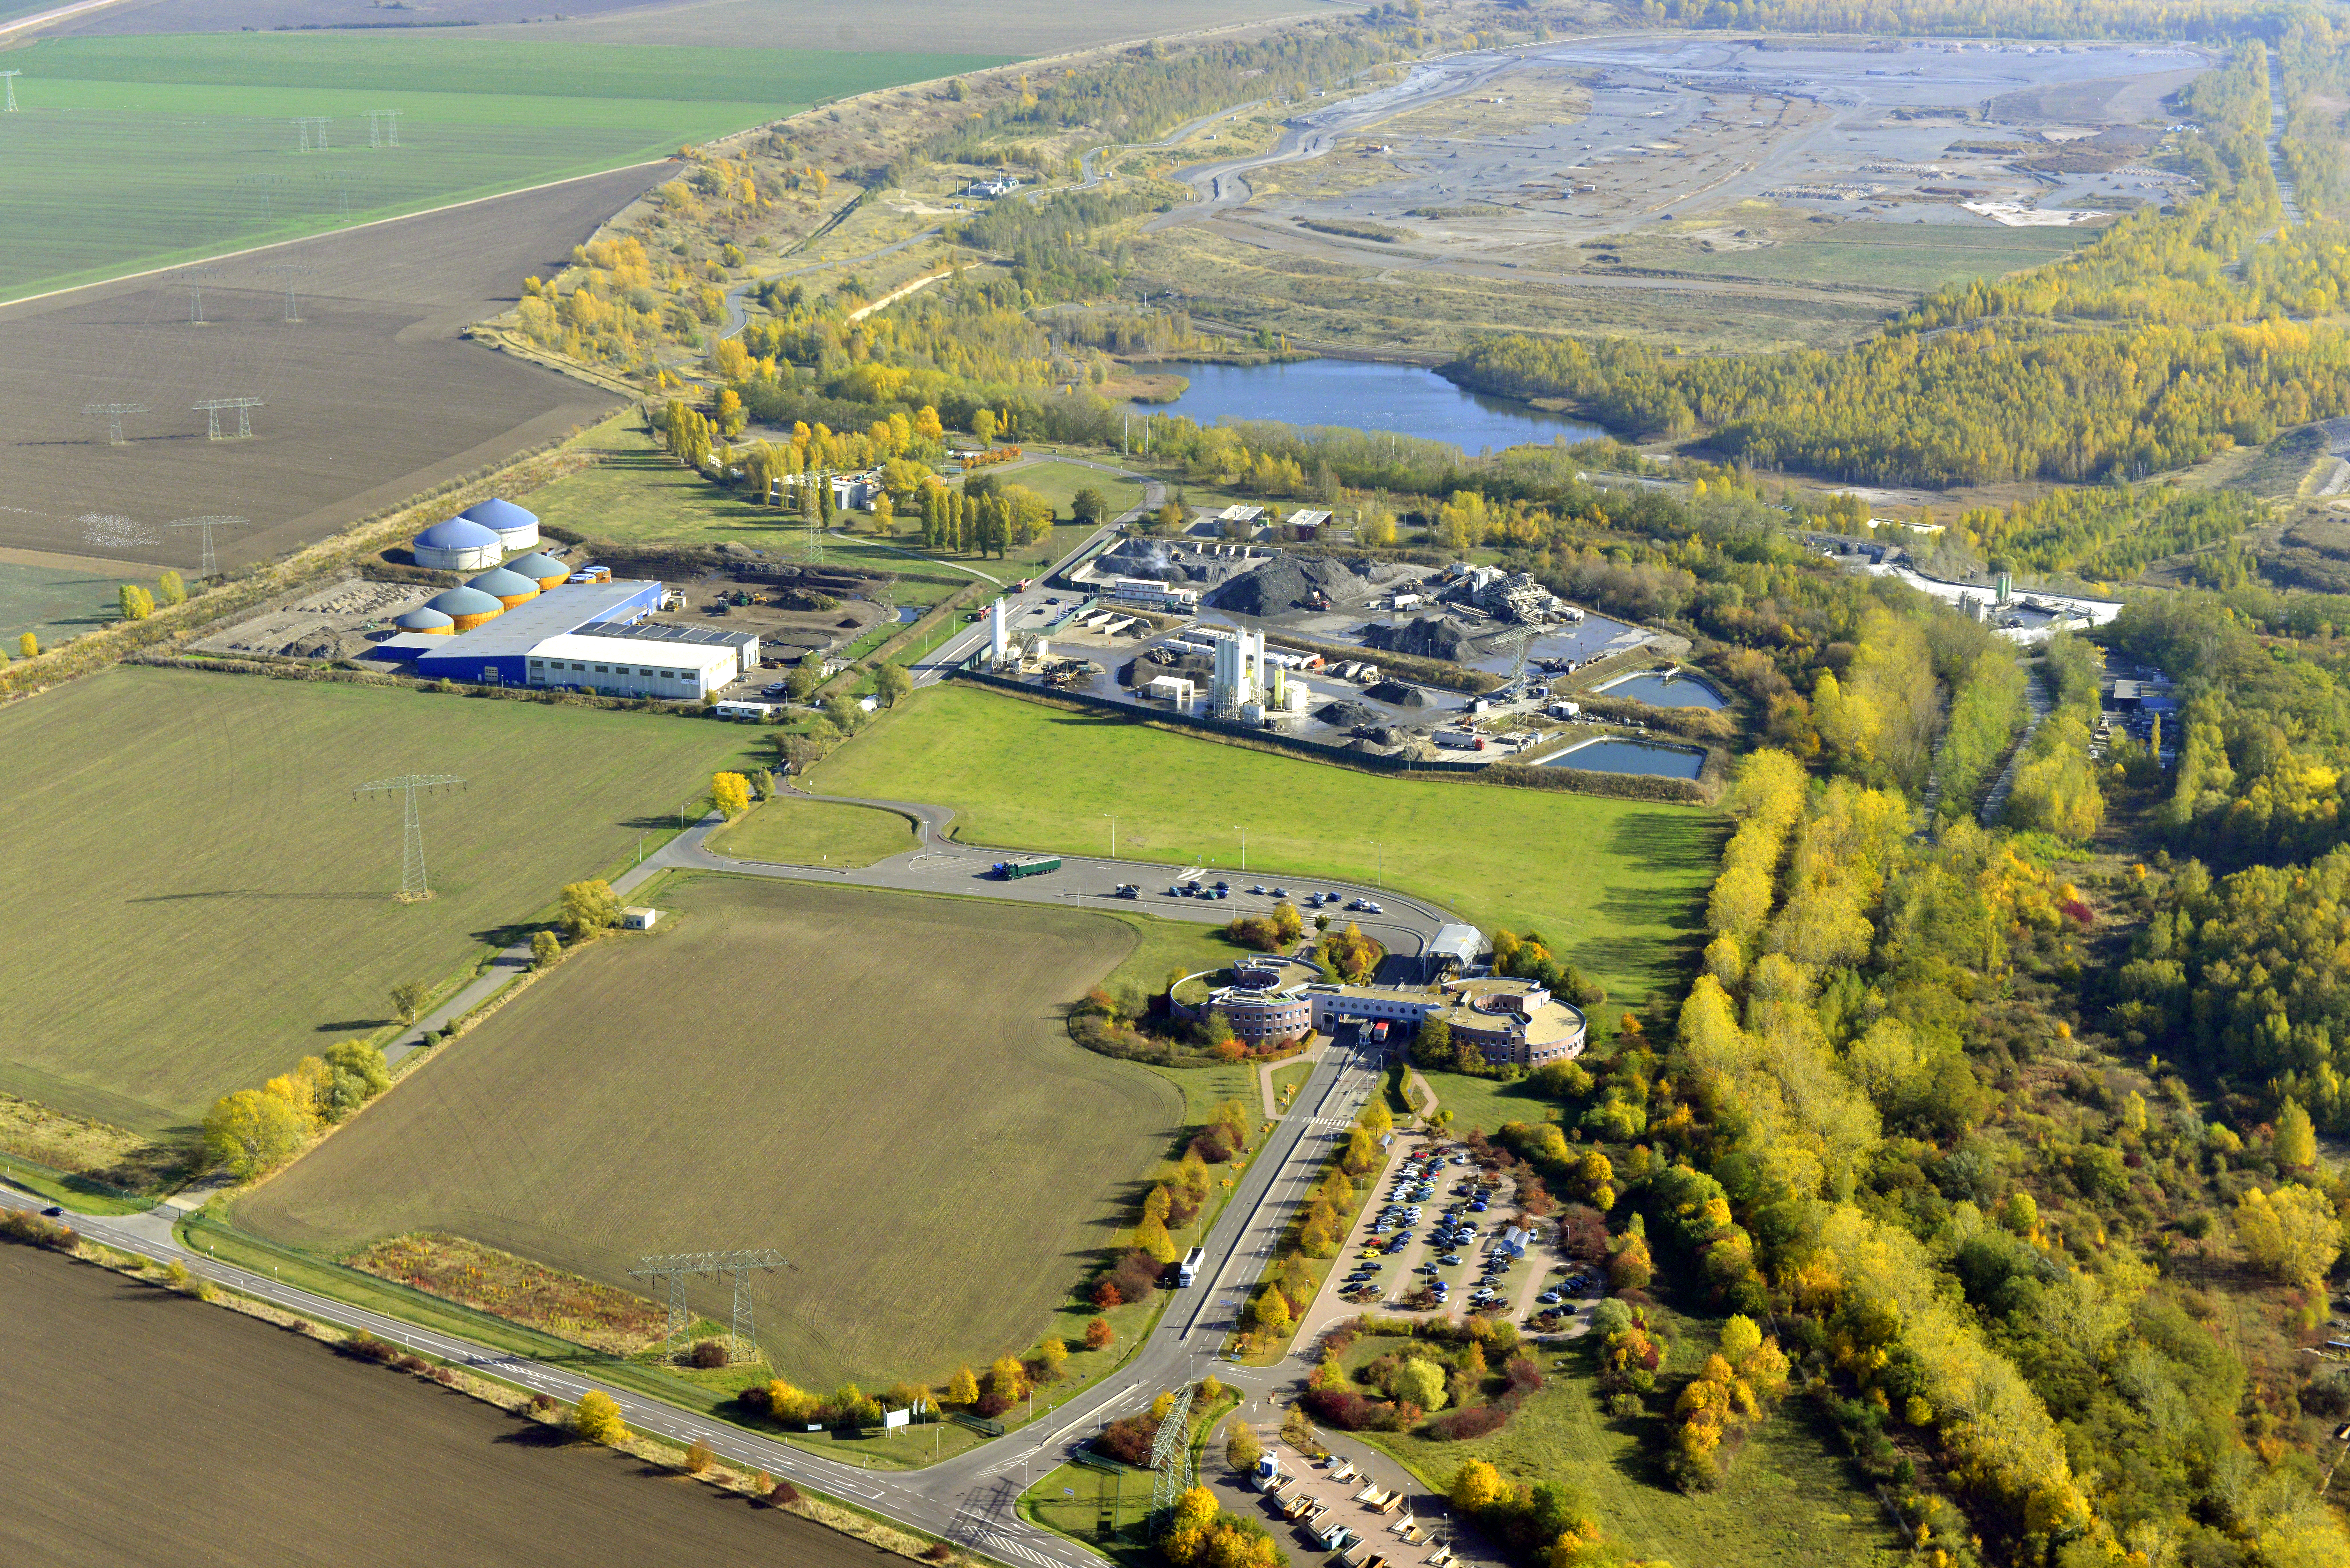 Das Bild zeigt eine Luftaufnahme vom Areal der Abfallwirtschaft GmbH Halle-Lochau. Etwa 2/3 des Bildes sind Wald, Rasen oder Seen. 